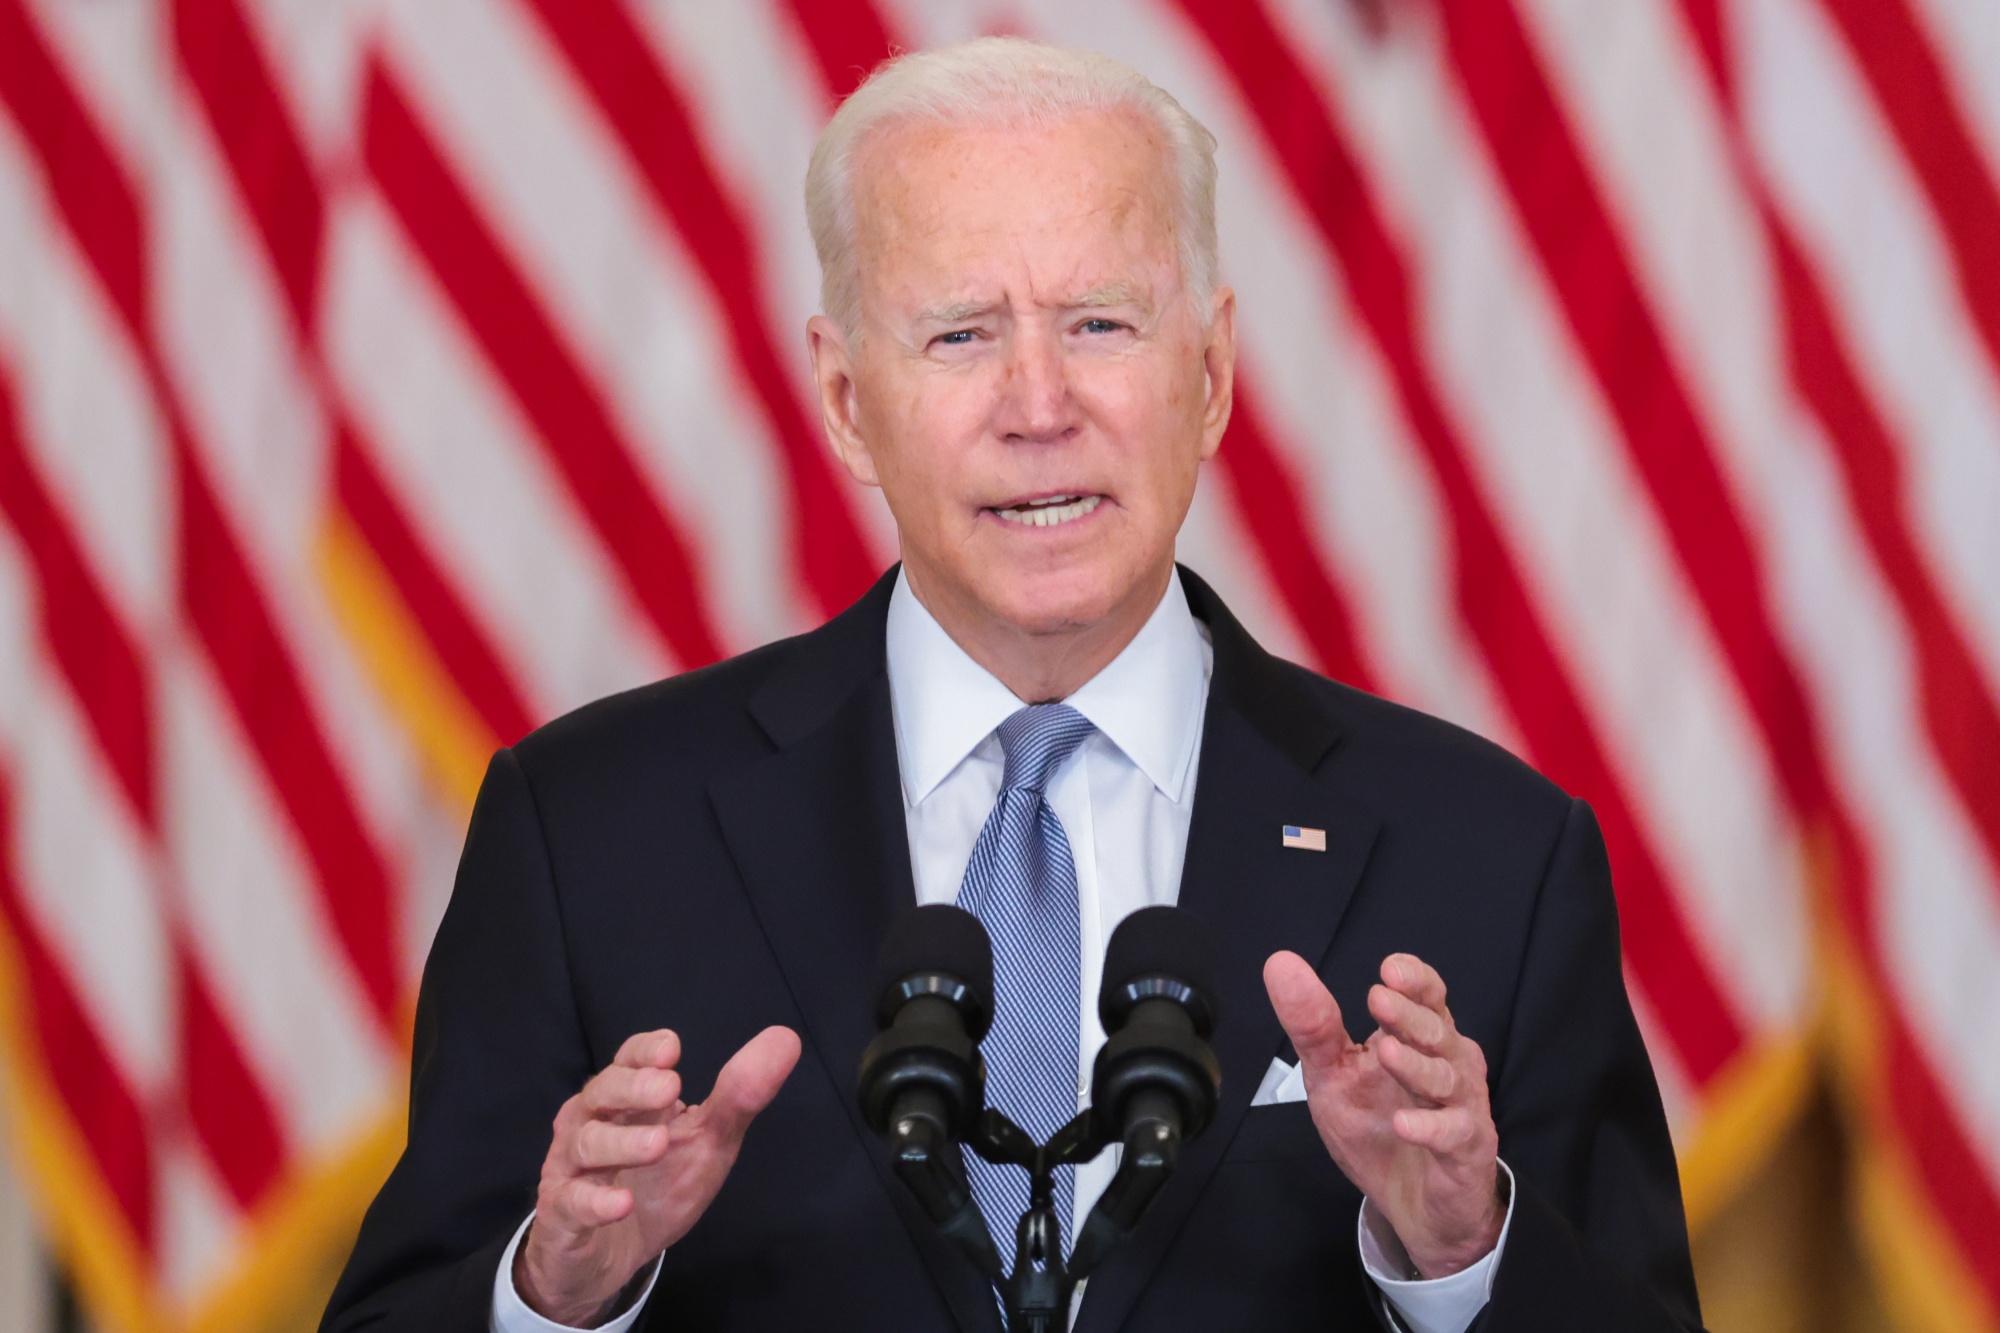 President Biden Delivers Remarks On Afghanistan